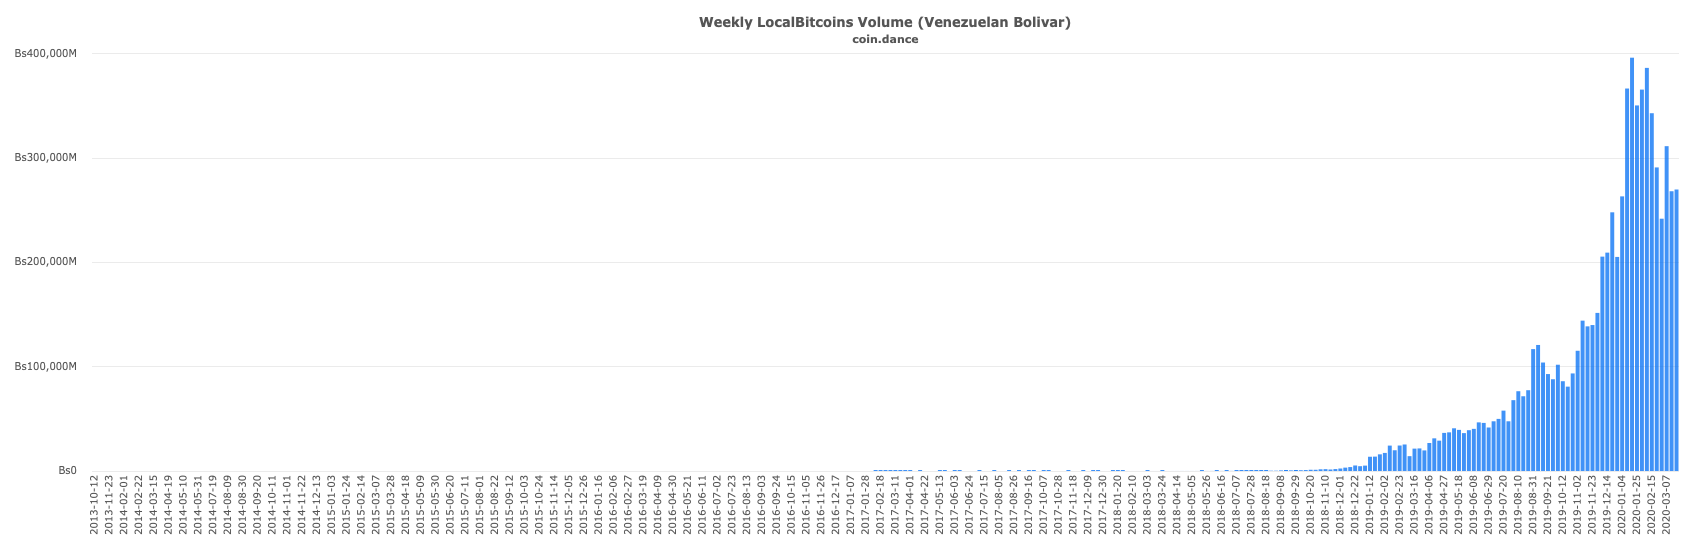 volume sur localbitcoins au vénézuela